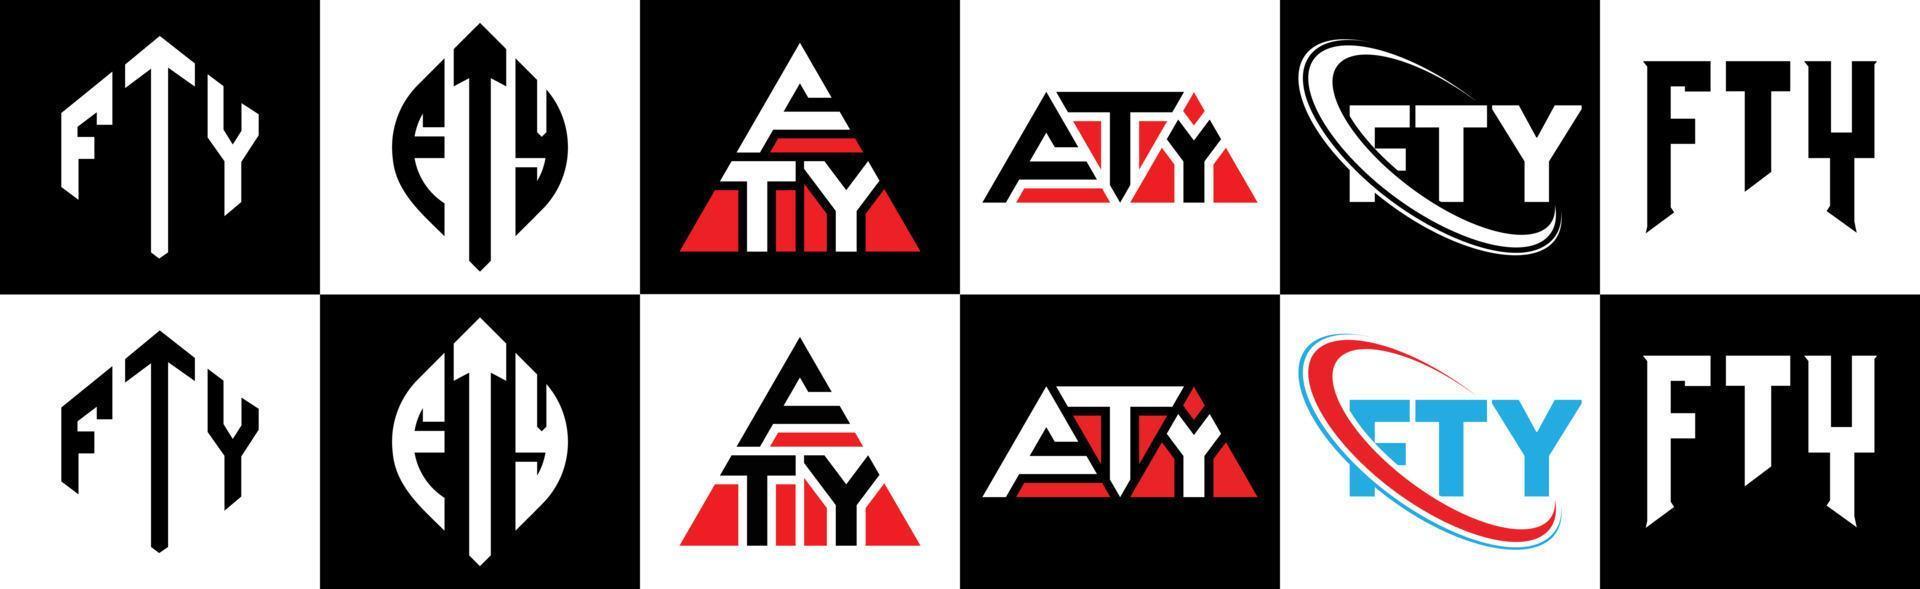 fty brief logo ontwerp in zes stijl. fty veelhoek, cirkel, driehoek, zeshoek, vlak en gemakkelijk stijl met zwart en wit kleur variatie brief logo reeks in een tekengebied. fty minimalistische en klassiek logo vector